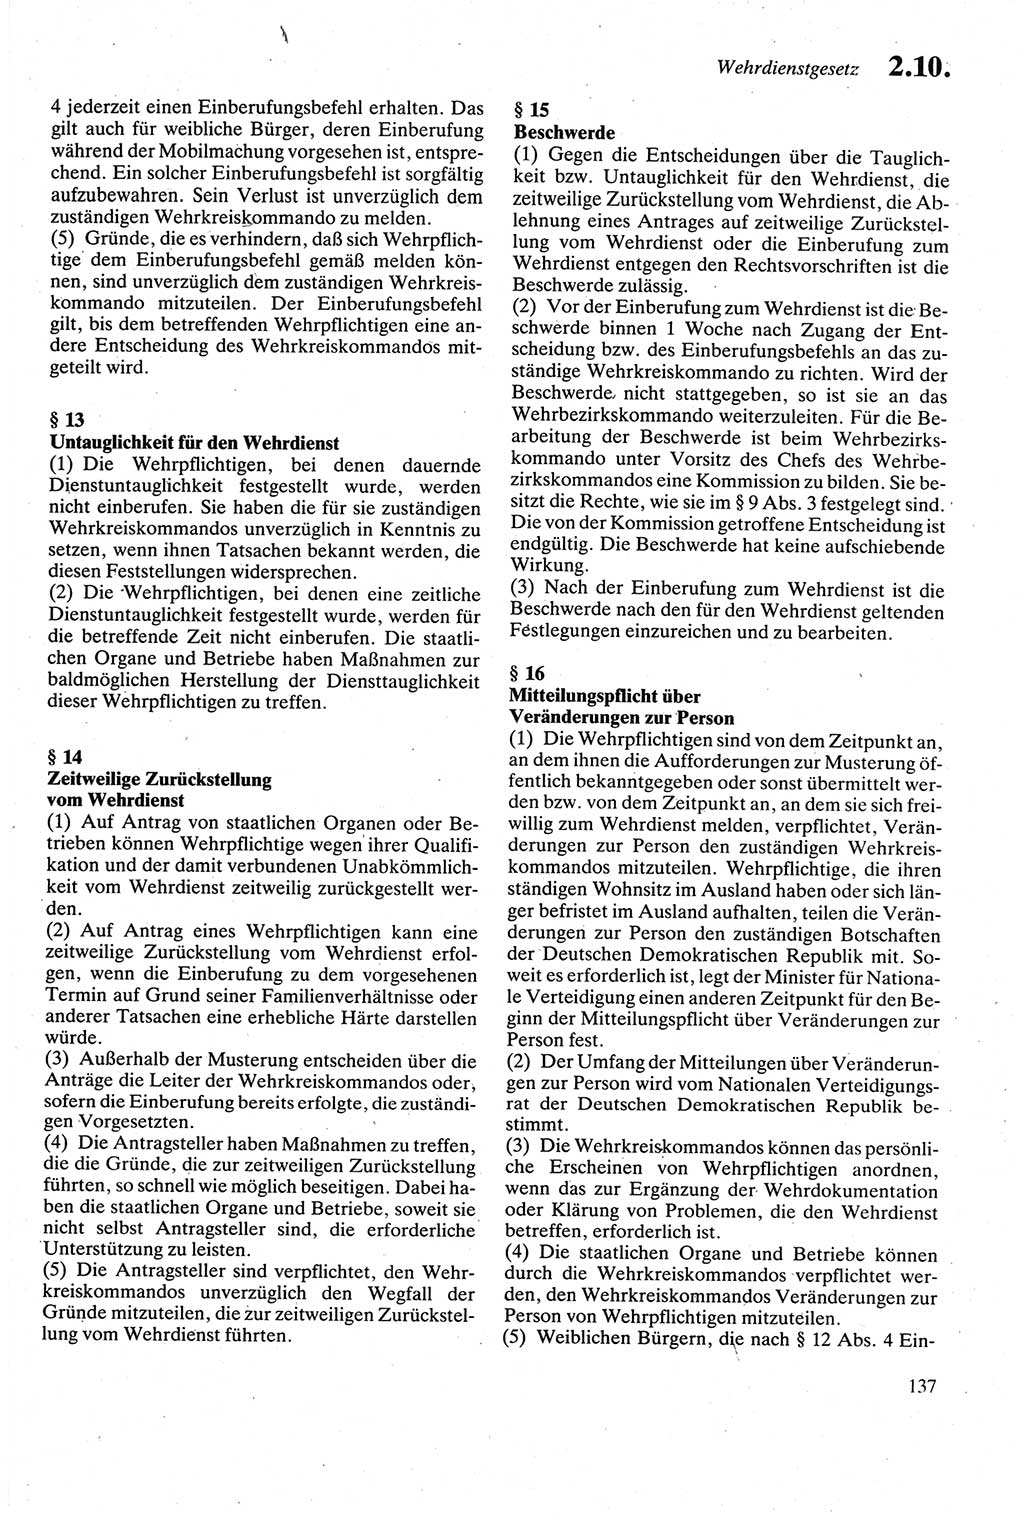 Strafgesetzbuch (StGB) der Deutschen Demokratischen Republik (DDR) sowie angrenzende Gesetze und Bestimmungen 1979, Seite 137 (StGB DDR Ges. Best. 1979, S. 137)